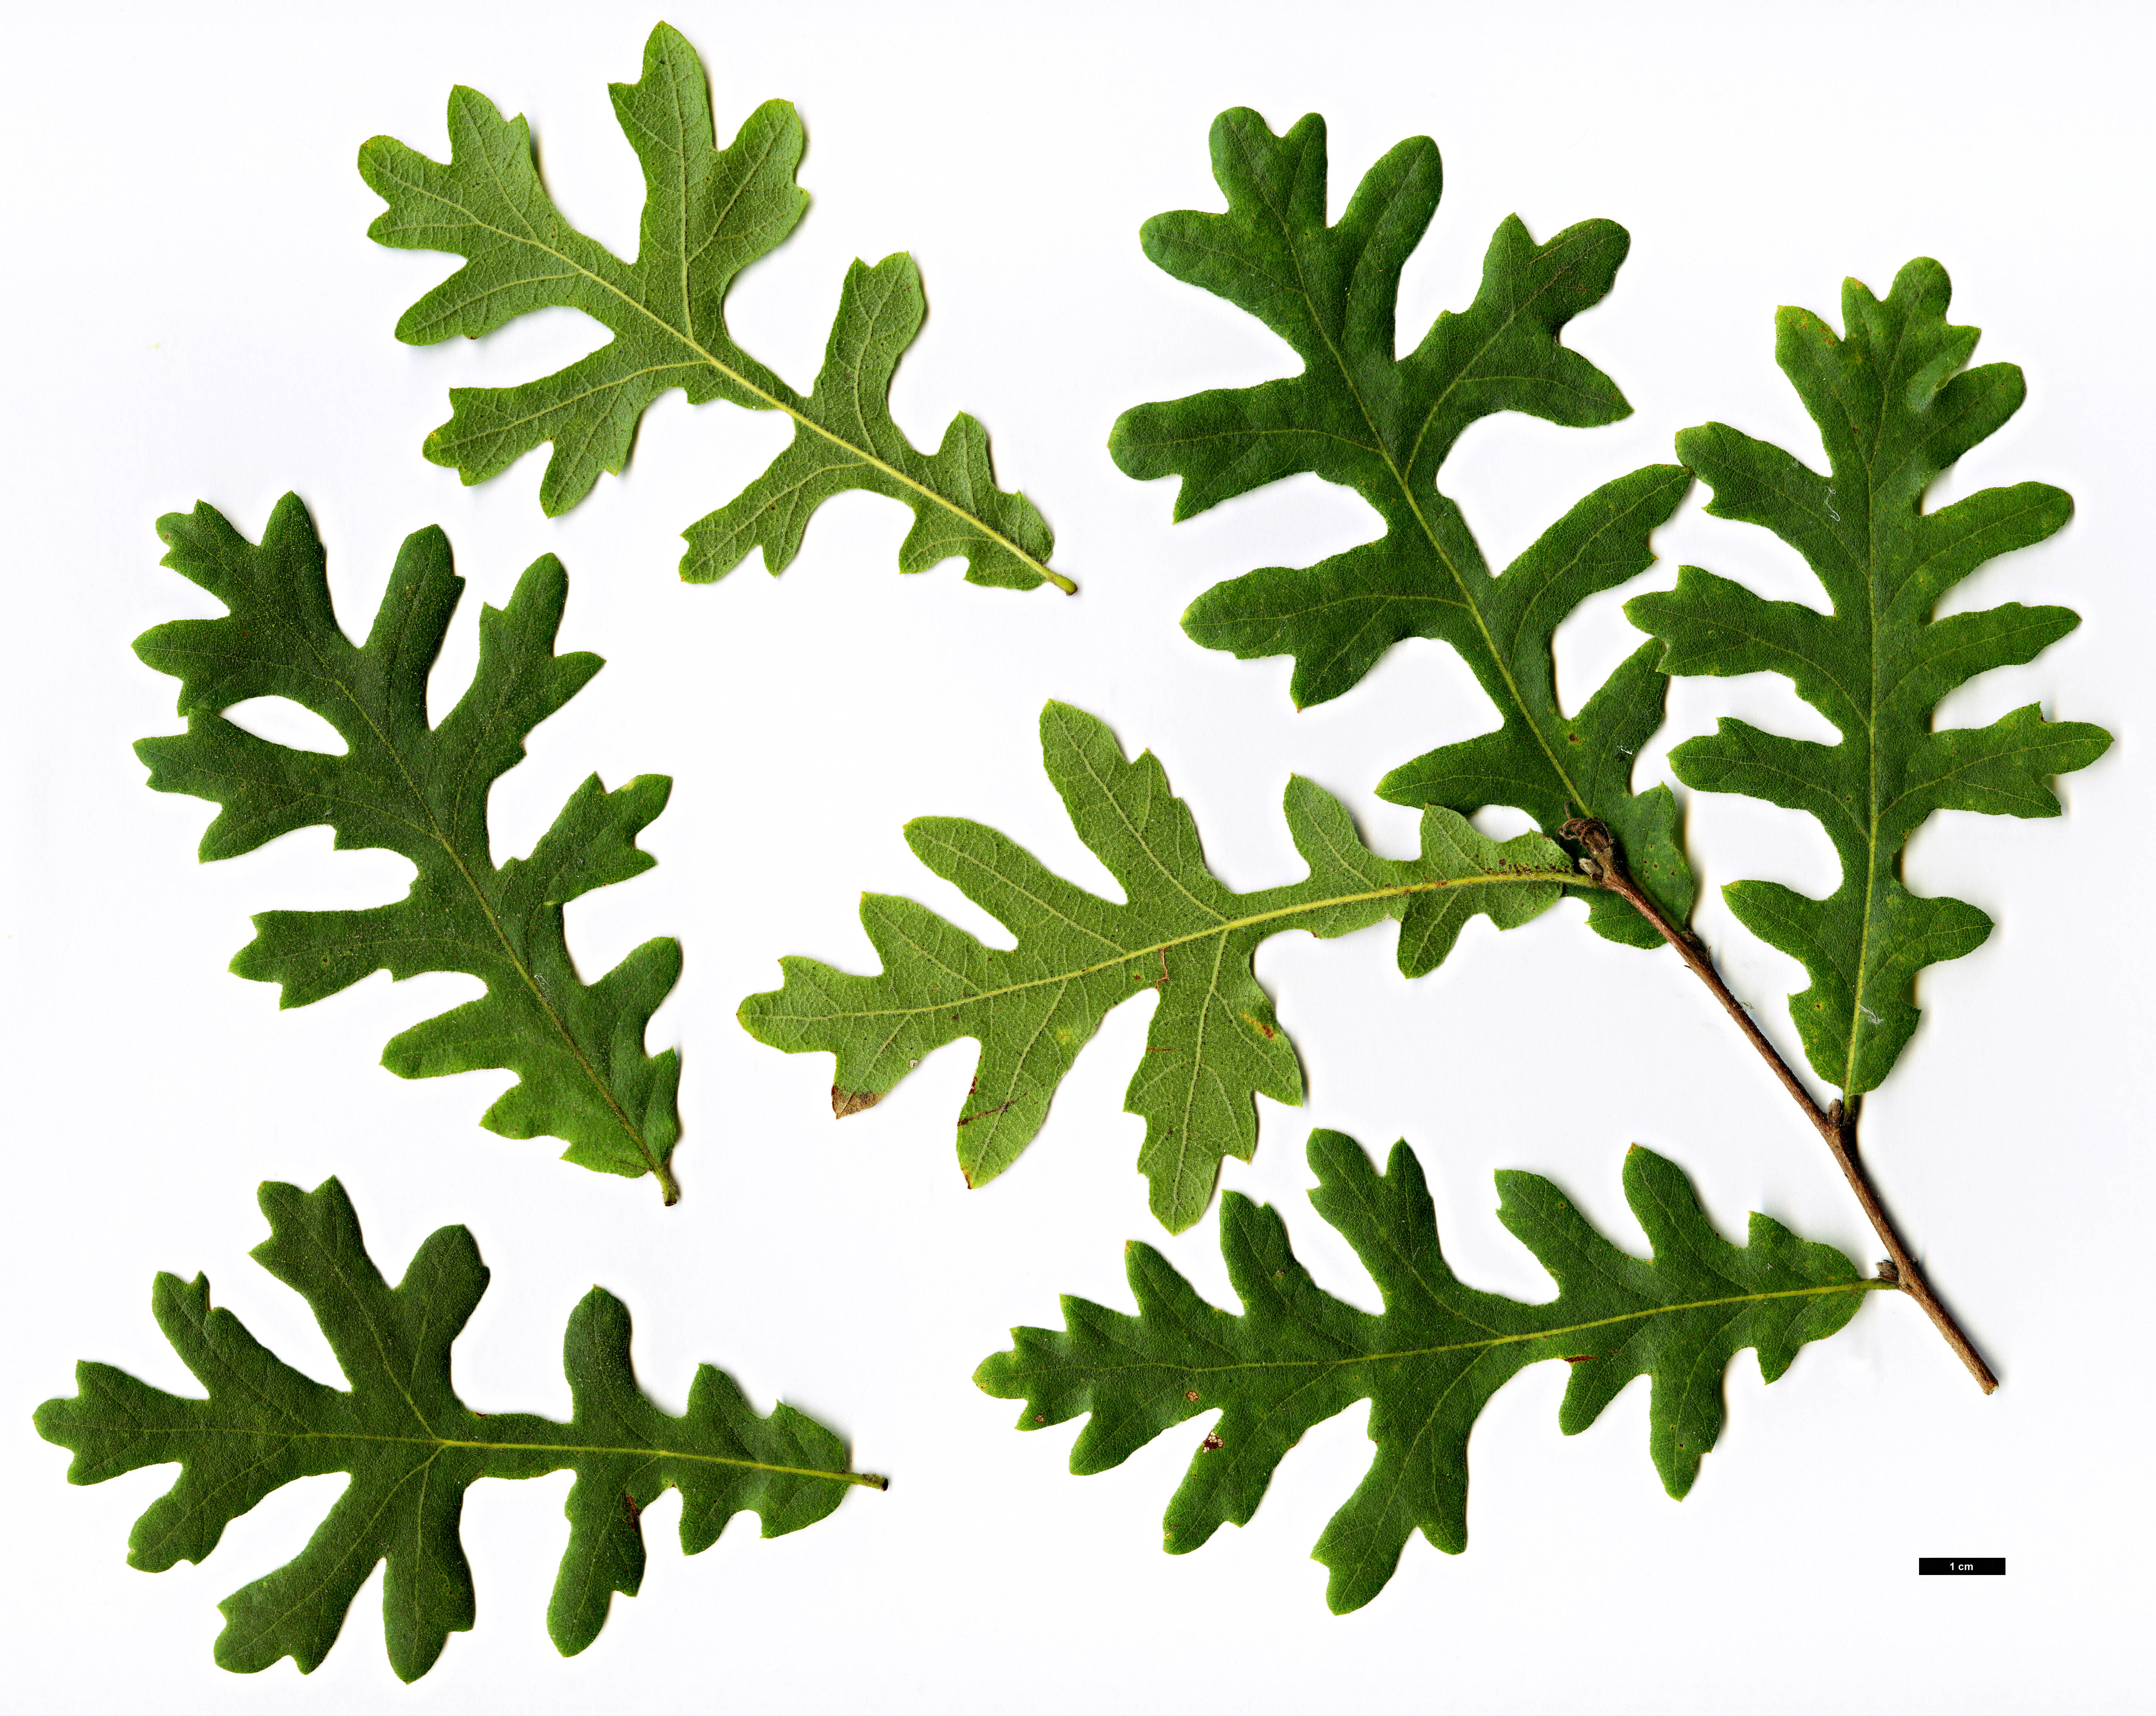 High resolution image: Family: Fagaceae - Genus: Quercus - Taxon: cerris 